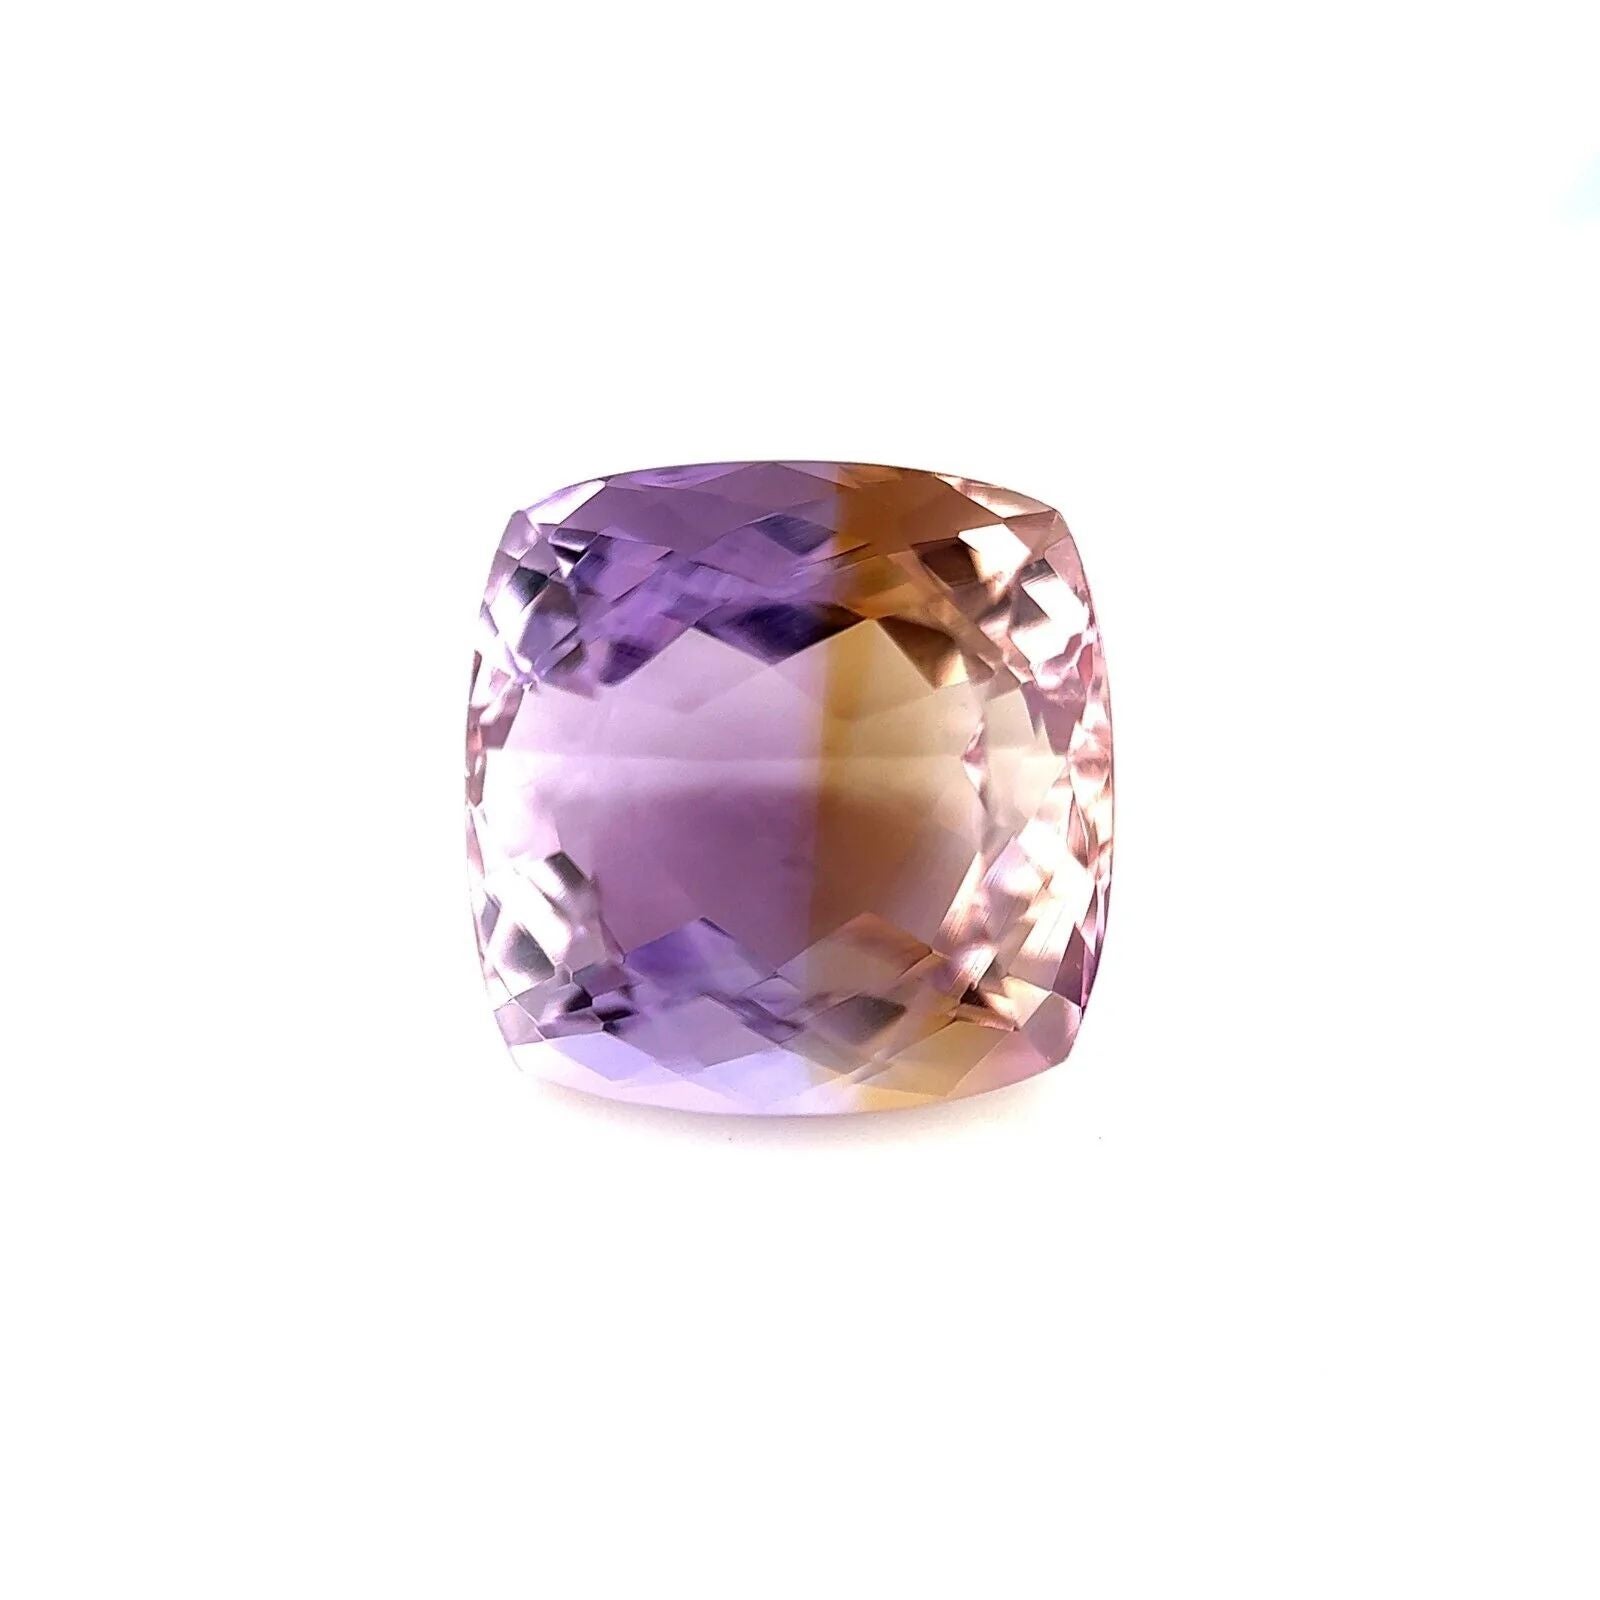 Ametrine naturelle de 13,53 carats, coupe coussin fantaisie, jaune et violet bicolore, 13,5 x 32,2 mm